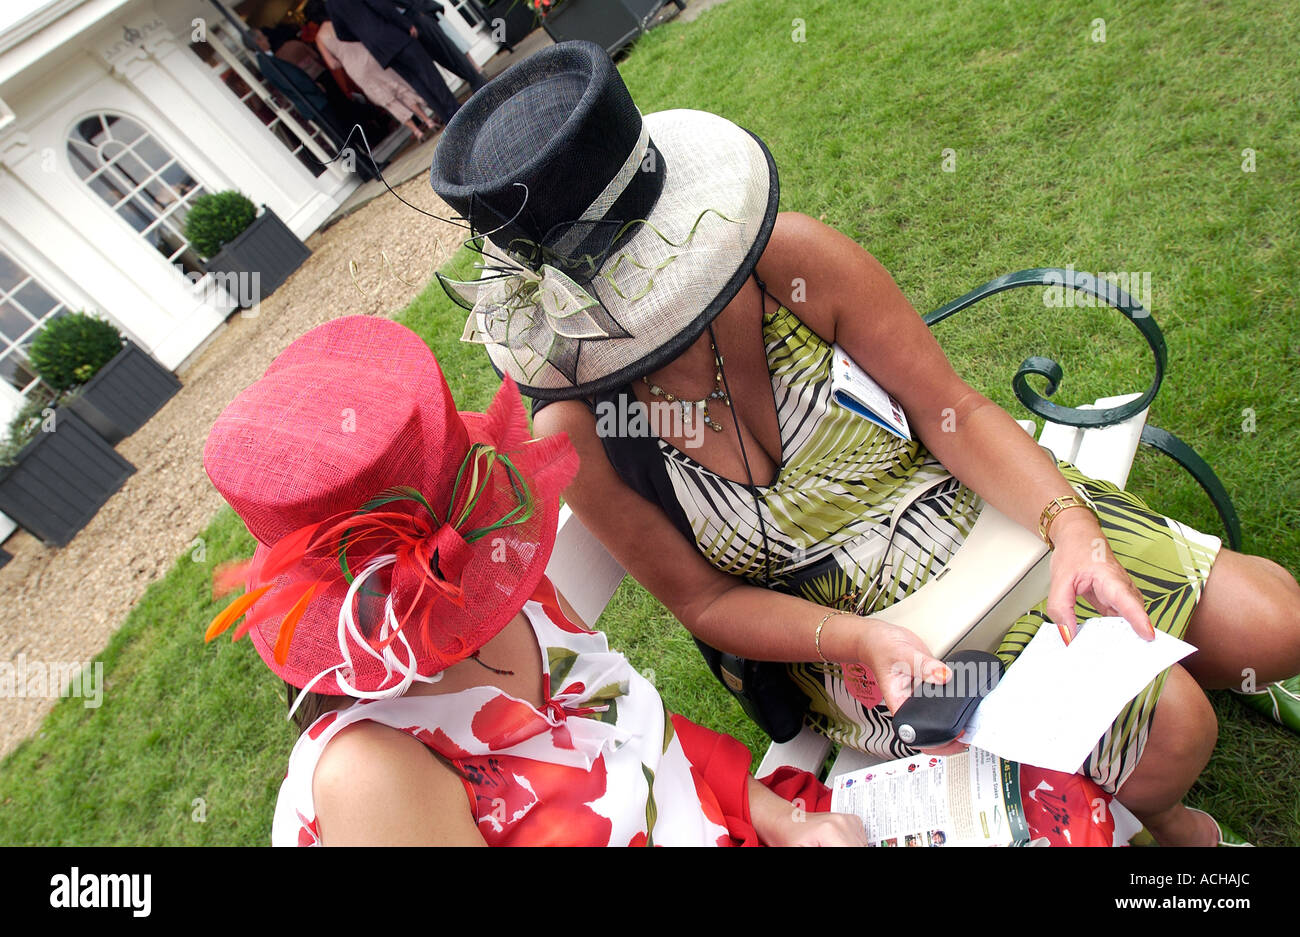 Onorevoli giorno cappelli (1) - York racecourse Foto Stock